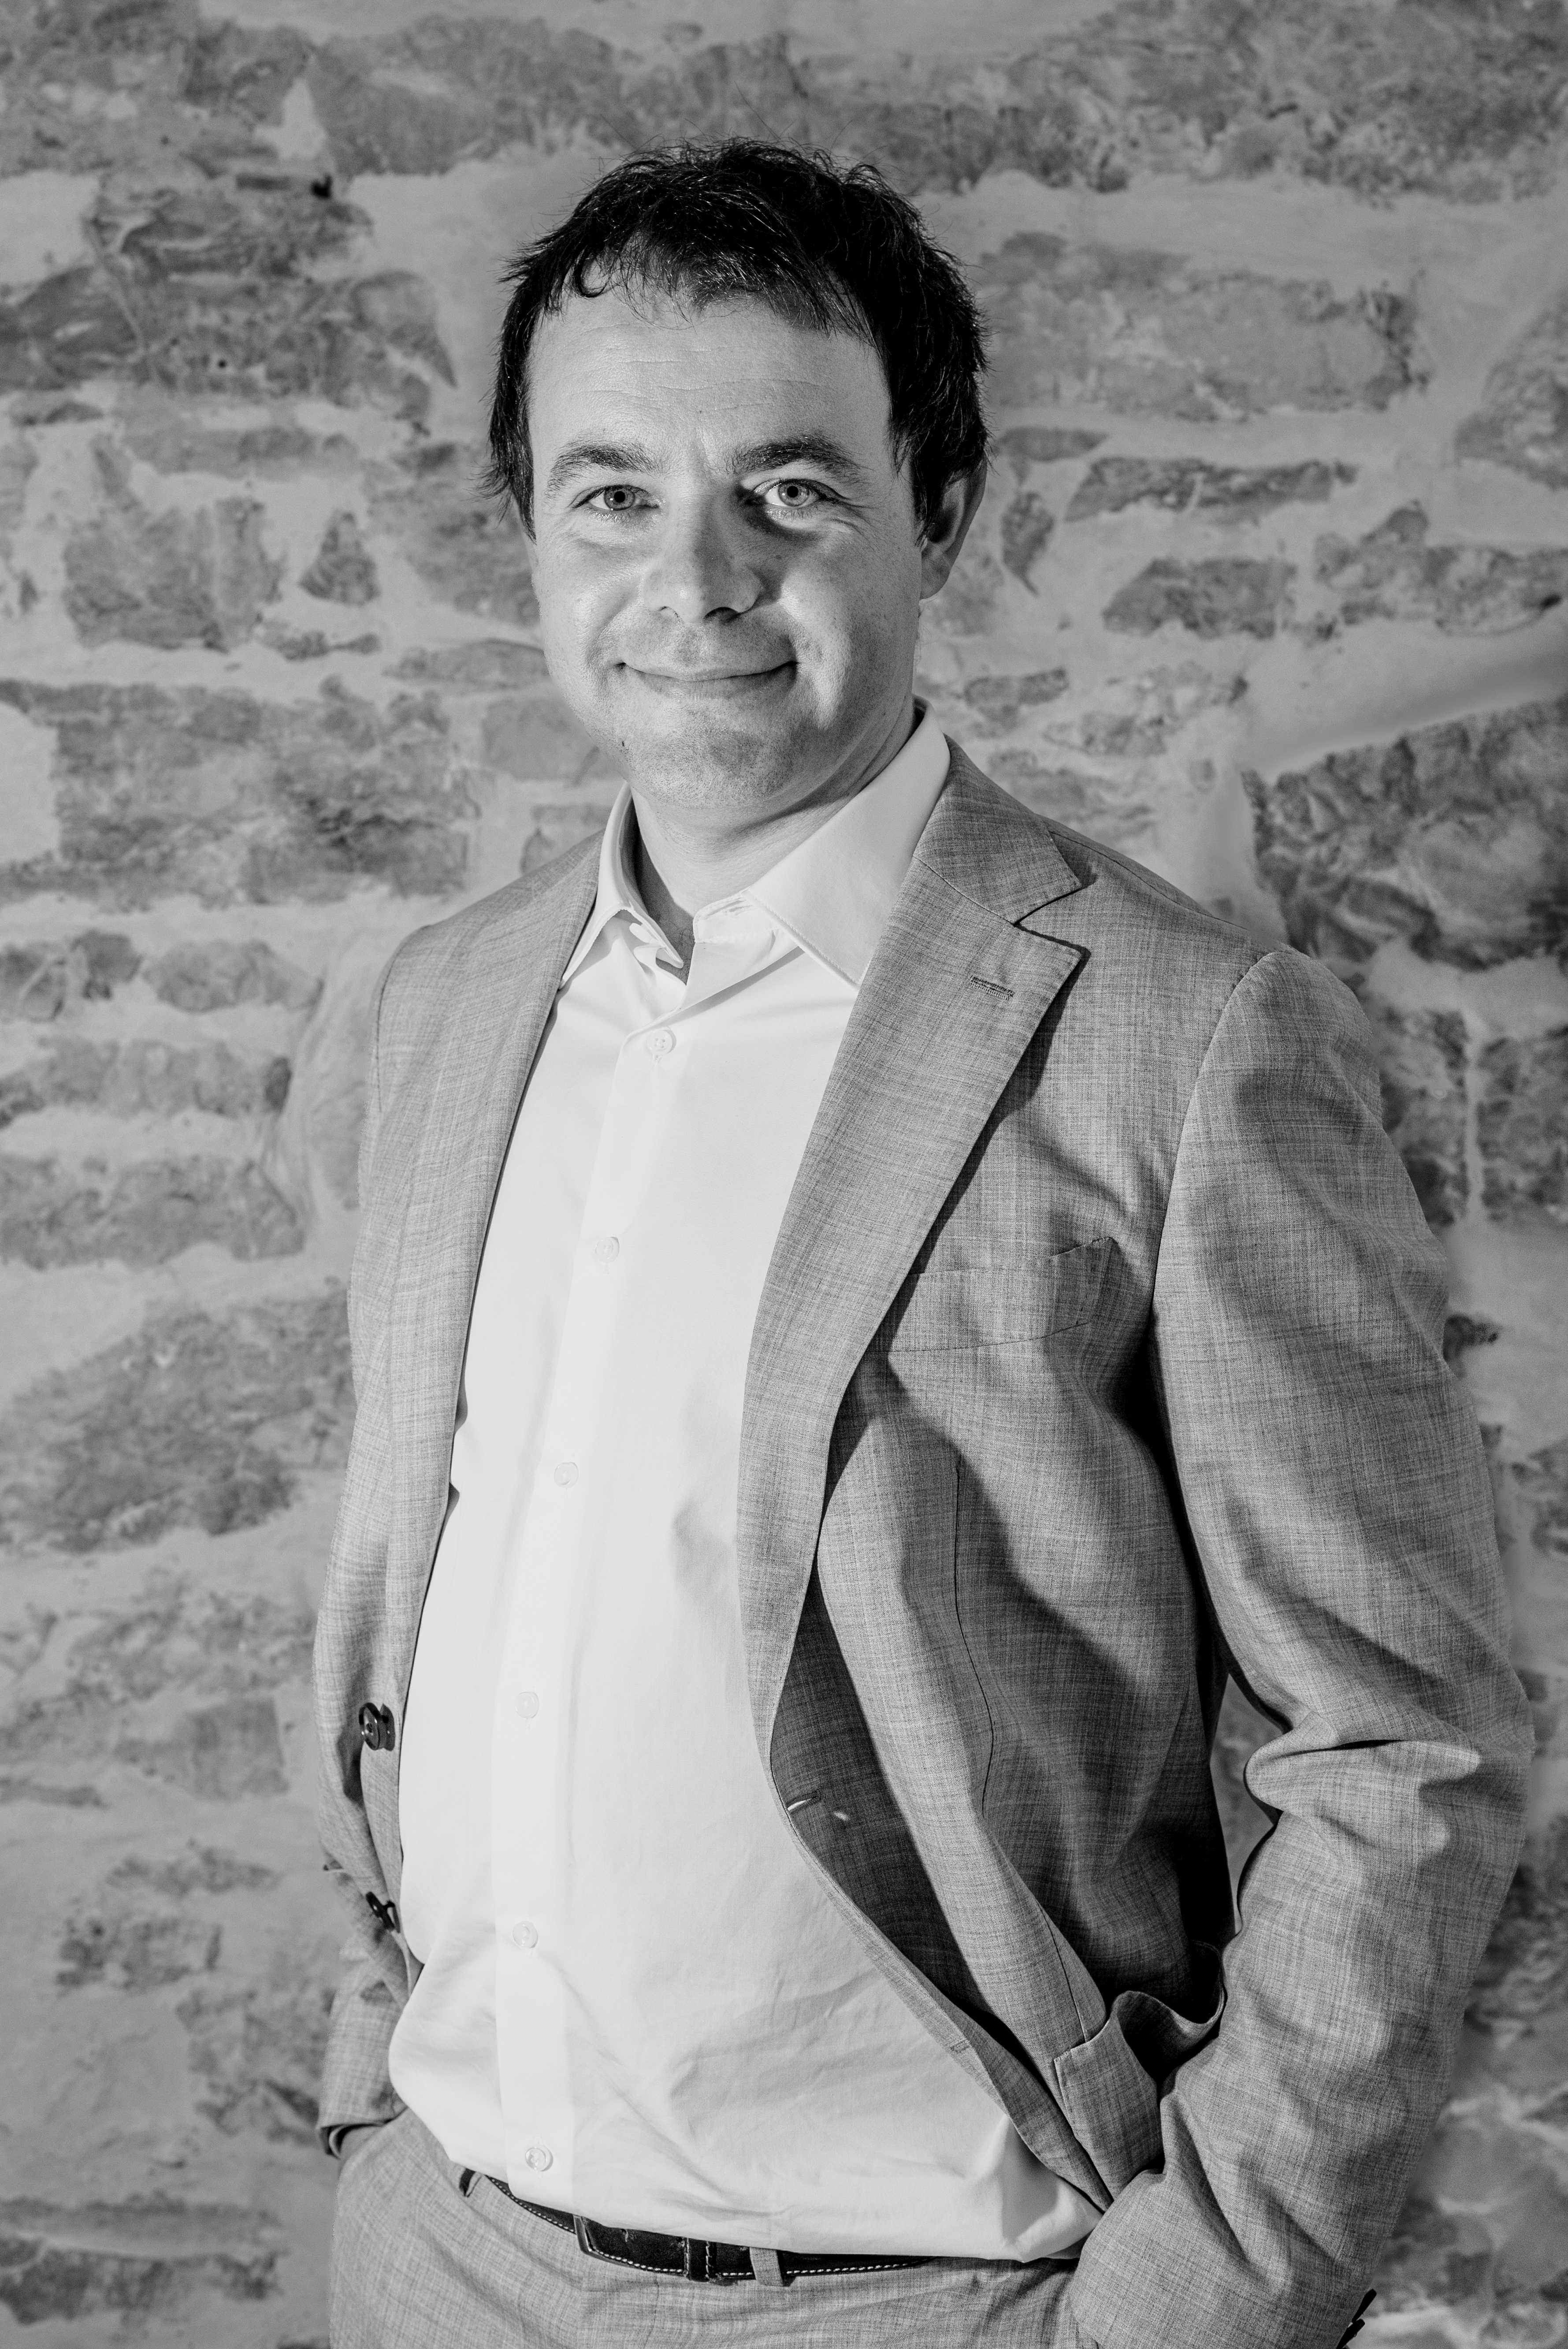 Antoine FEVRIER immobilier Toulon Hyeres Var consultant